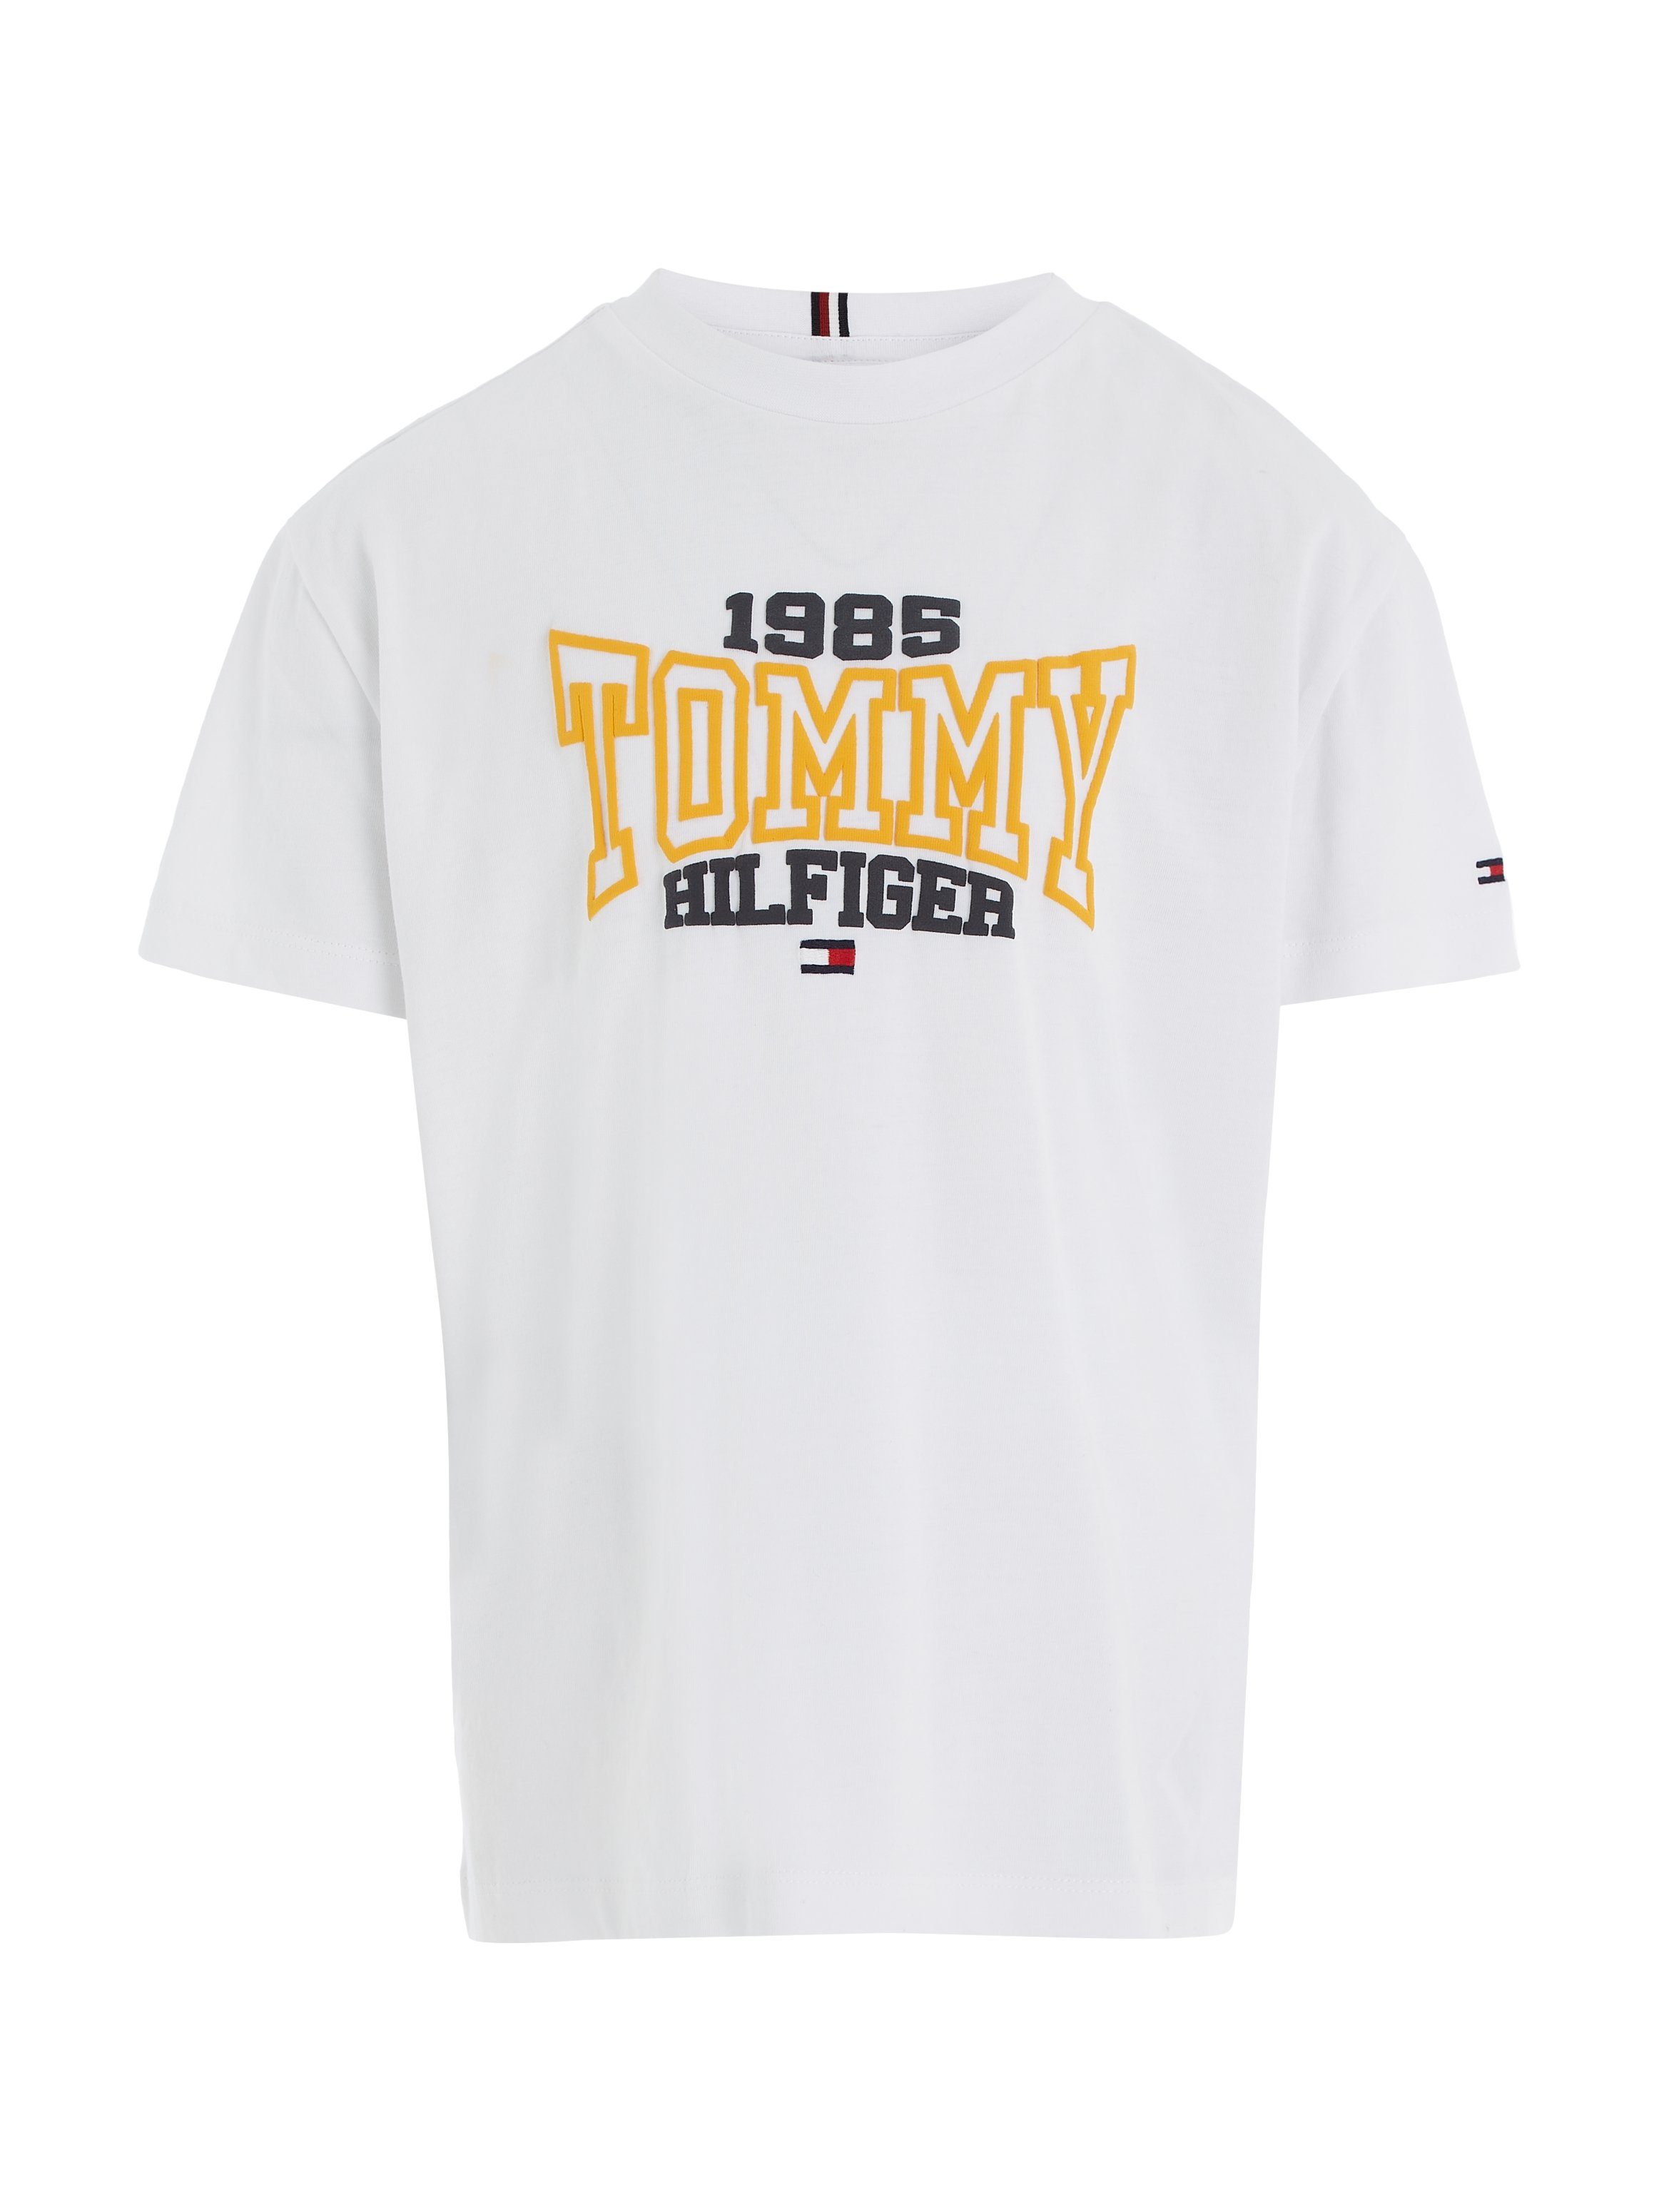 Tommy Hilfiger Hilfgier S/S mit 1985 T-Shirt Varsity TEE White VARSITY 1985 Tommy Print TOMMY modischem